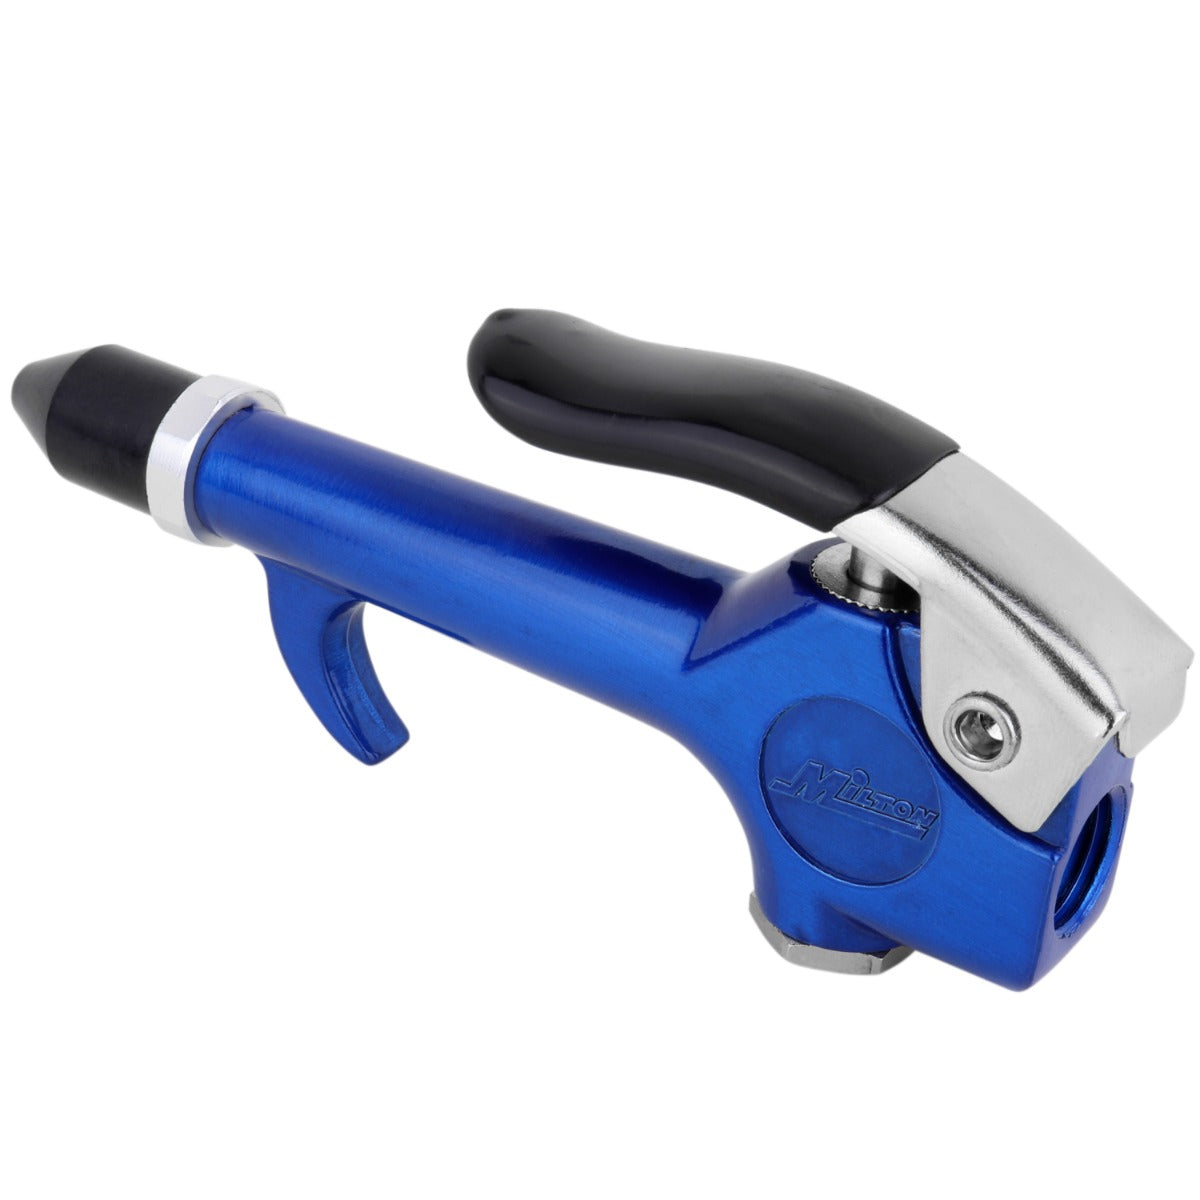 COLORFIT® S-148TC 1/4” NPT Lever Blow Gun Tool - Rubber Tip Nozzle, Blue